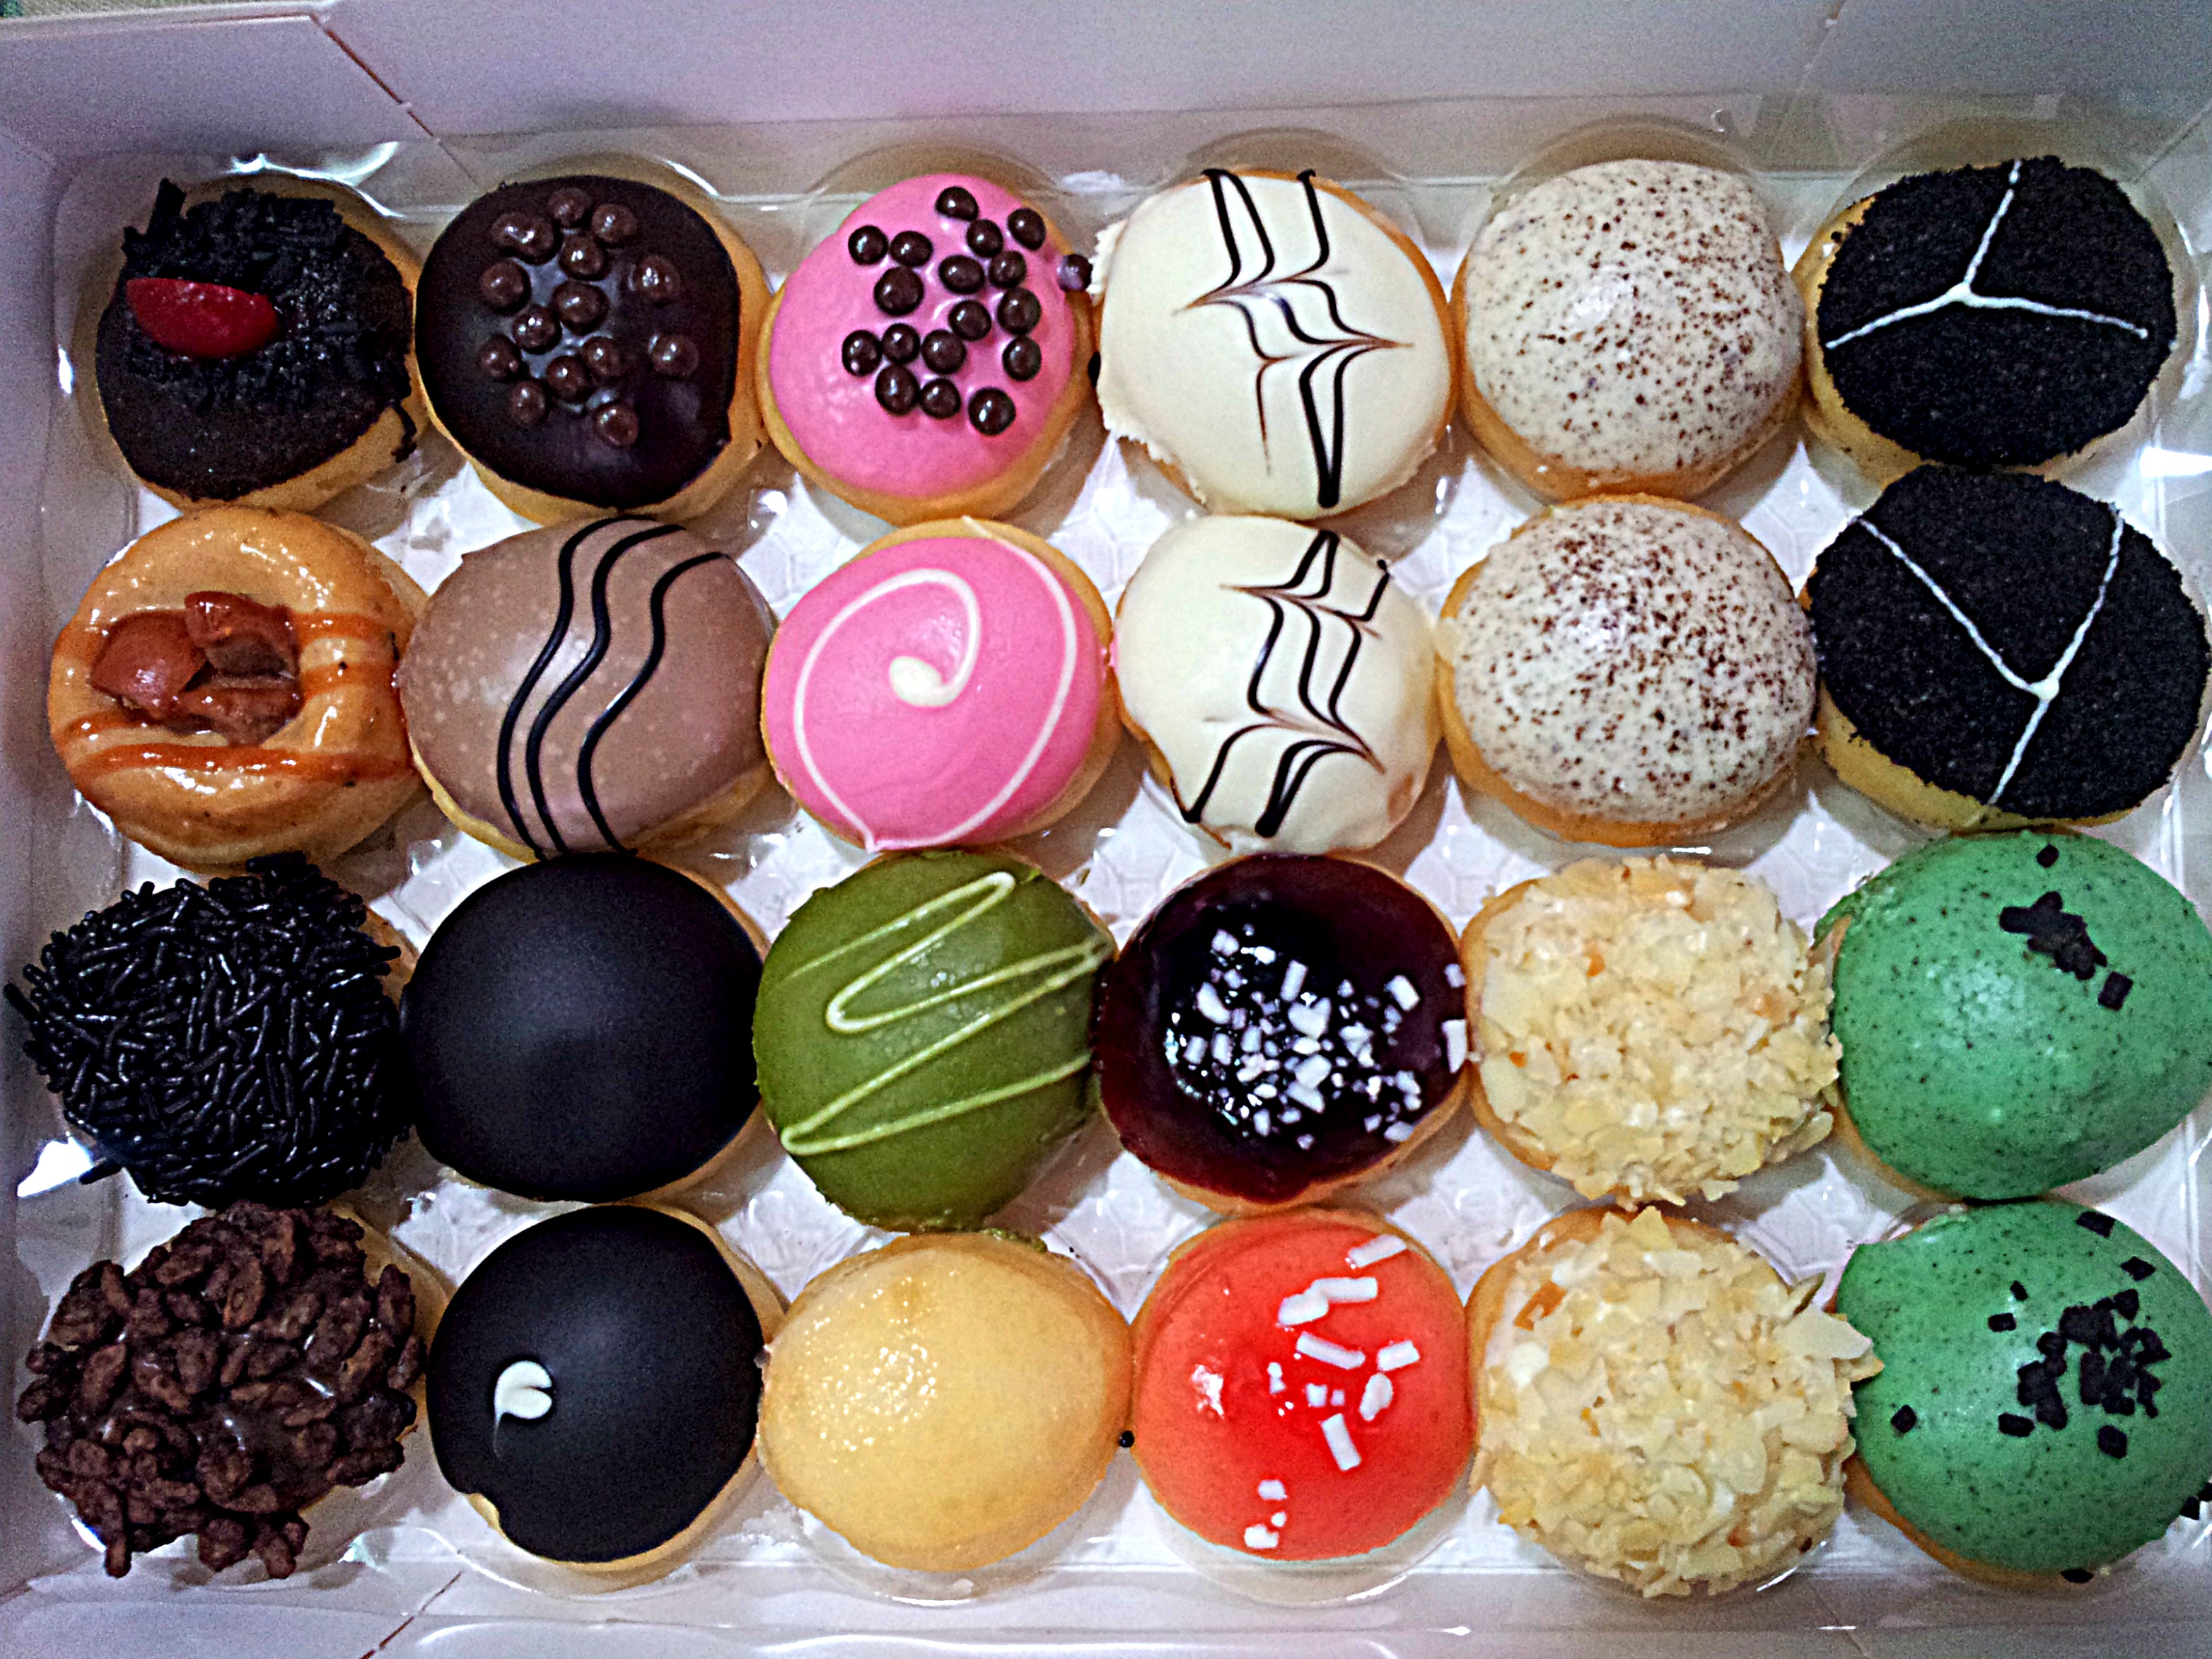 J. Co donuts – my sweetpainteddreams